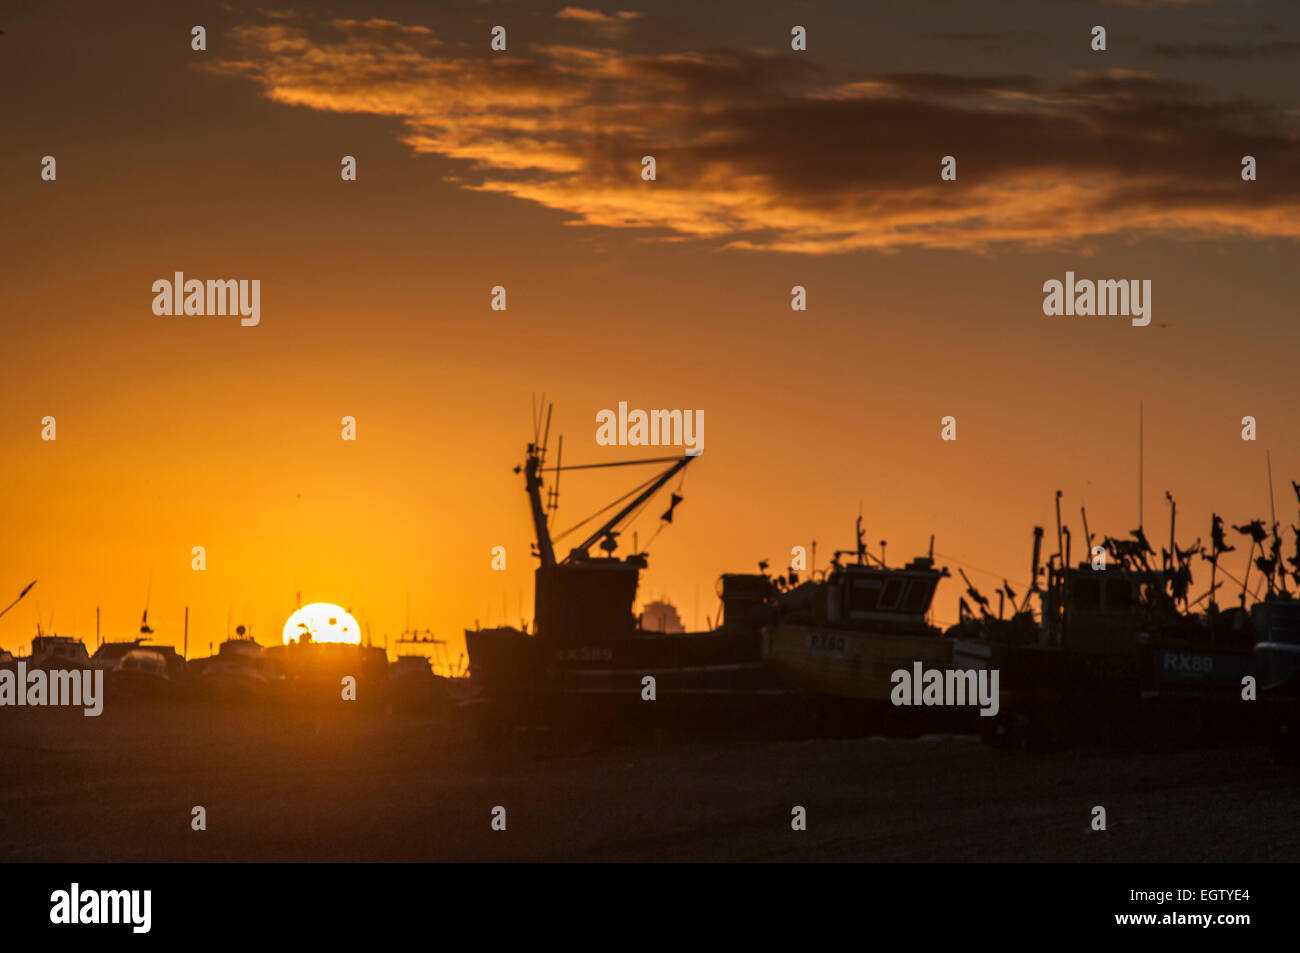 Hastings, East Sussex, Royaume-Uni. 2 mars 2015. Météo au Royaume-Uni : coucher de soleil sur la flotte de pêche de la vieille ville Banque D'Images